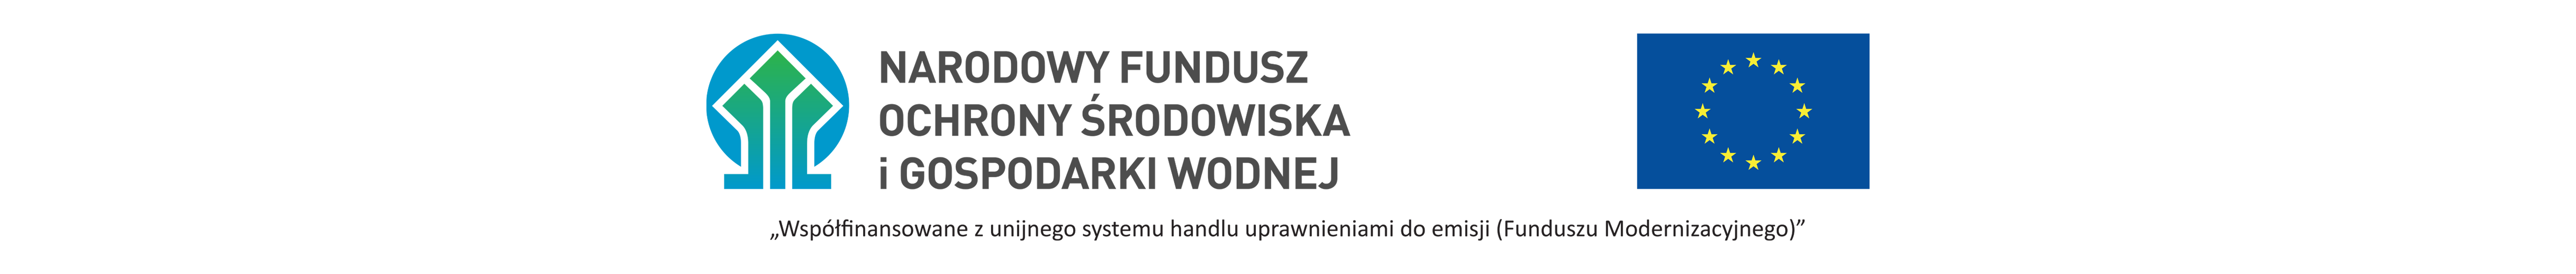  Logotyp NFOŚiGW, flaga UE, a poniżej napis: 